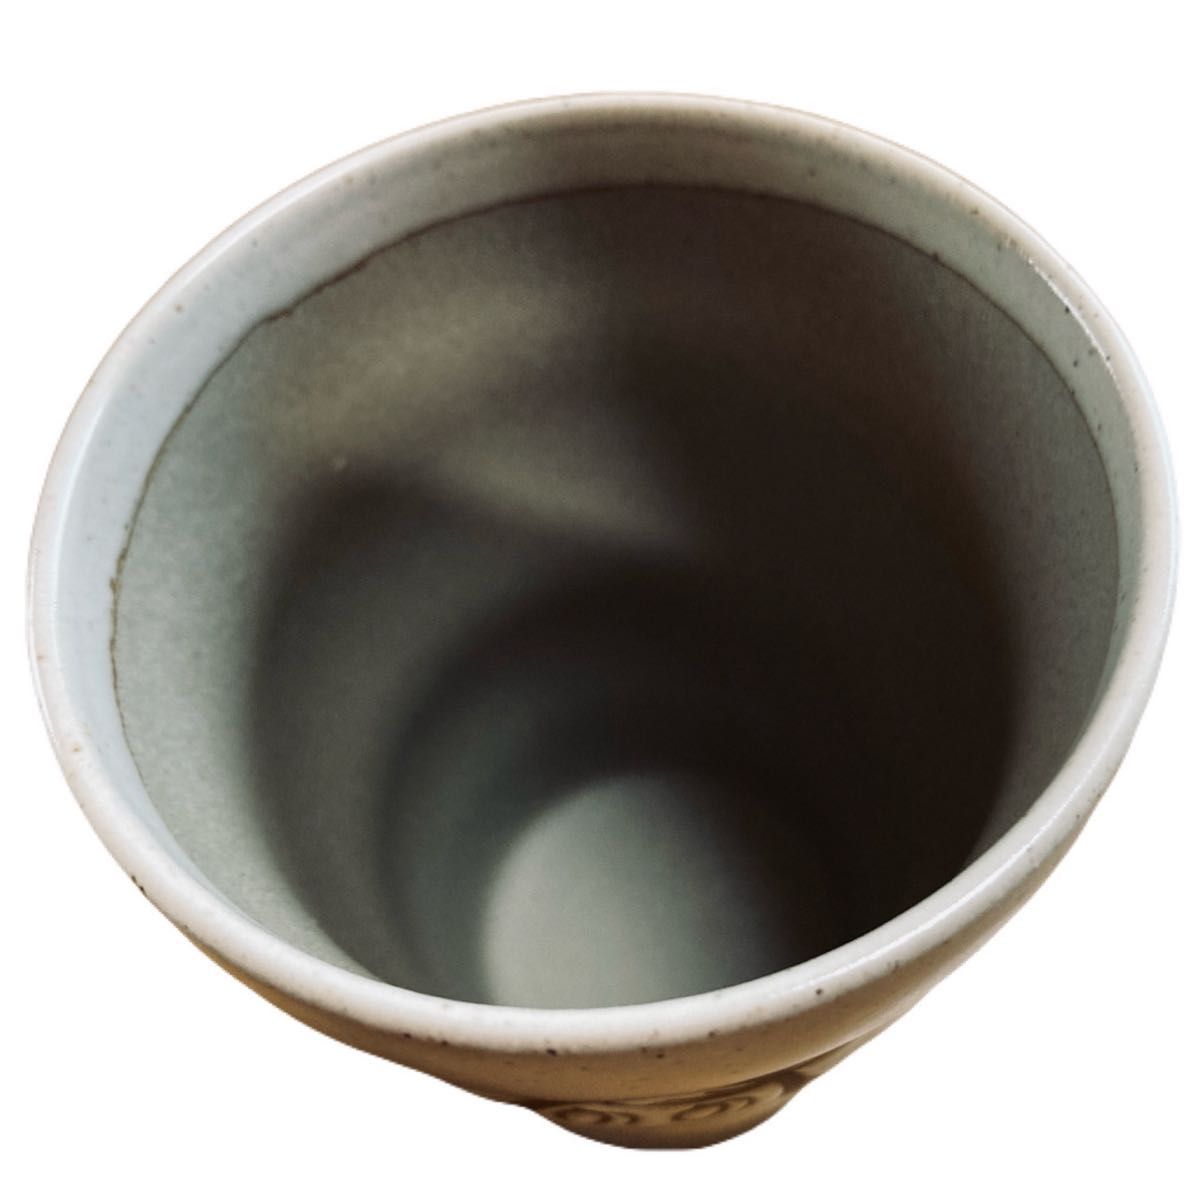 【母の日/父の日】泡がキレイな陶器製ペアビアカップ 新品 未使用 非売品 レア物